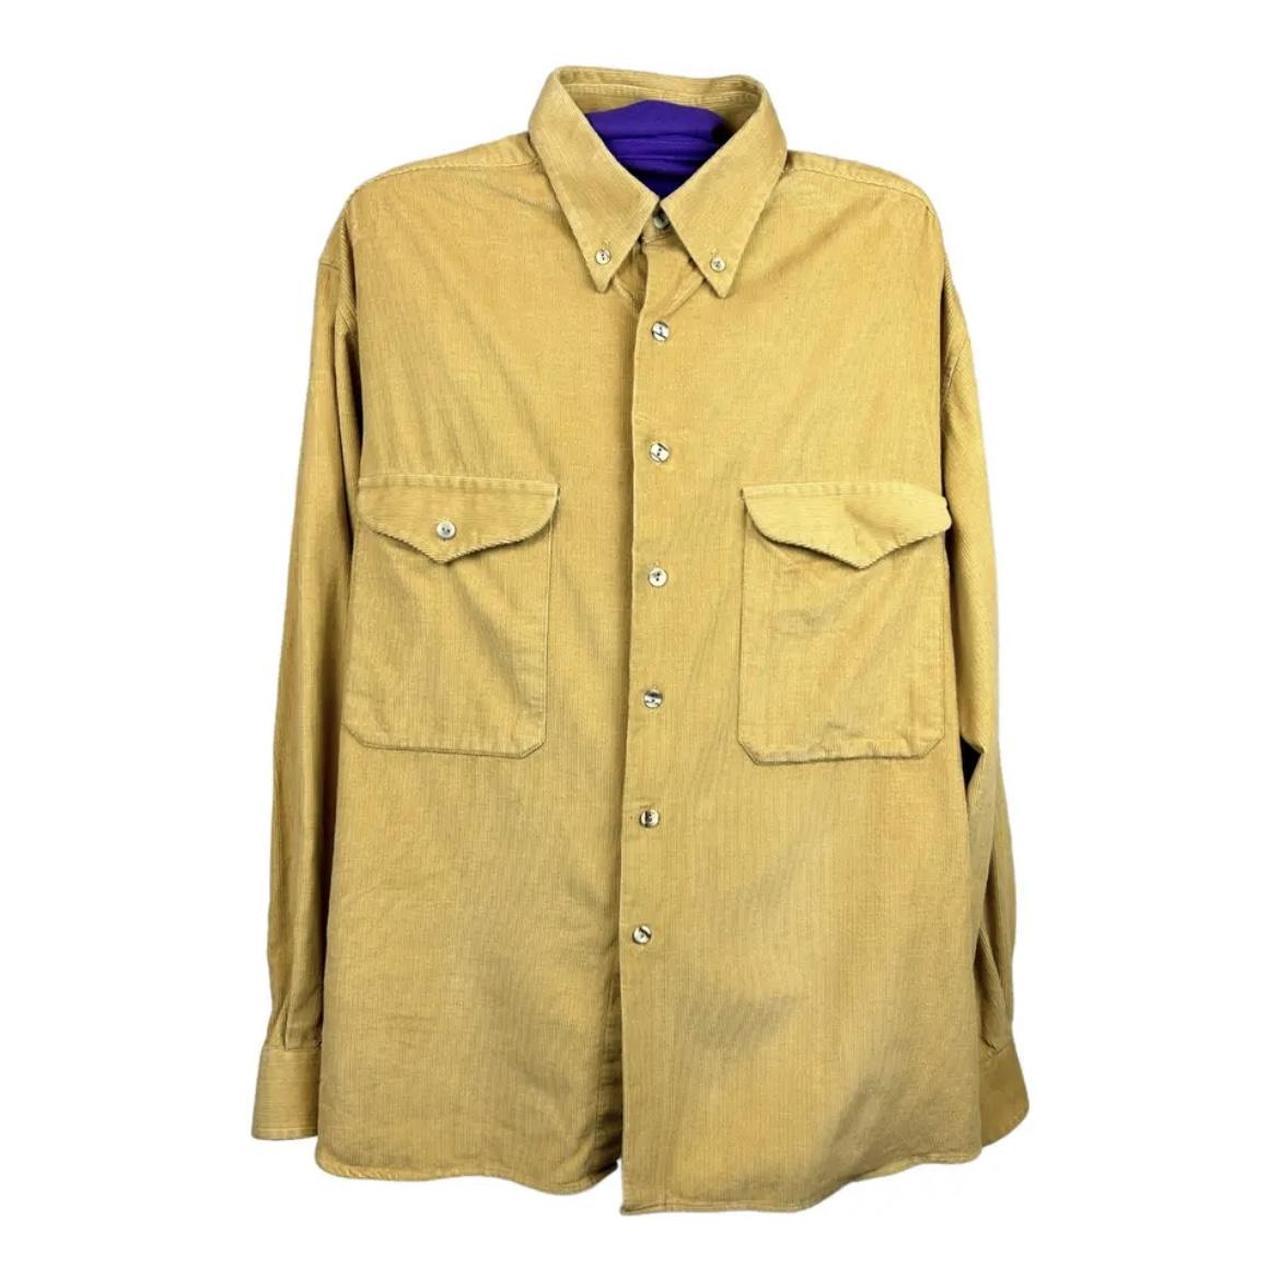 Men's Tan and Yellow Shirt | Depop